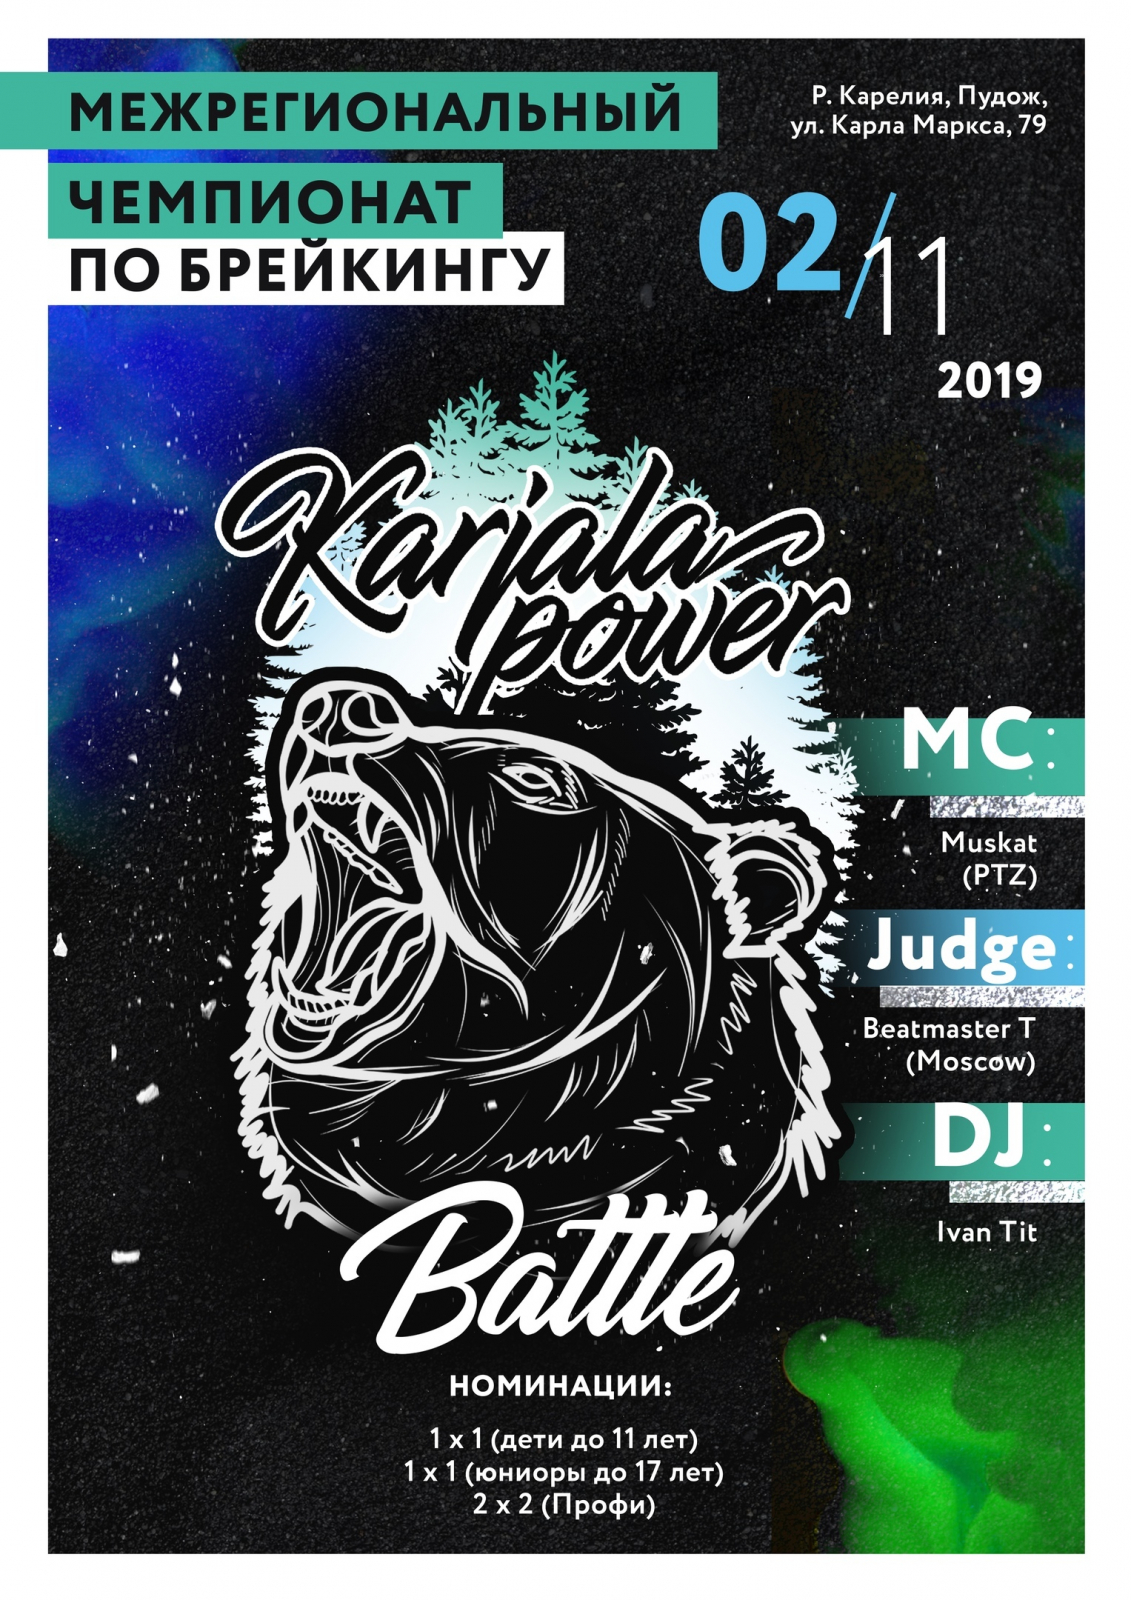 Karjala Power Battle 2019 poster